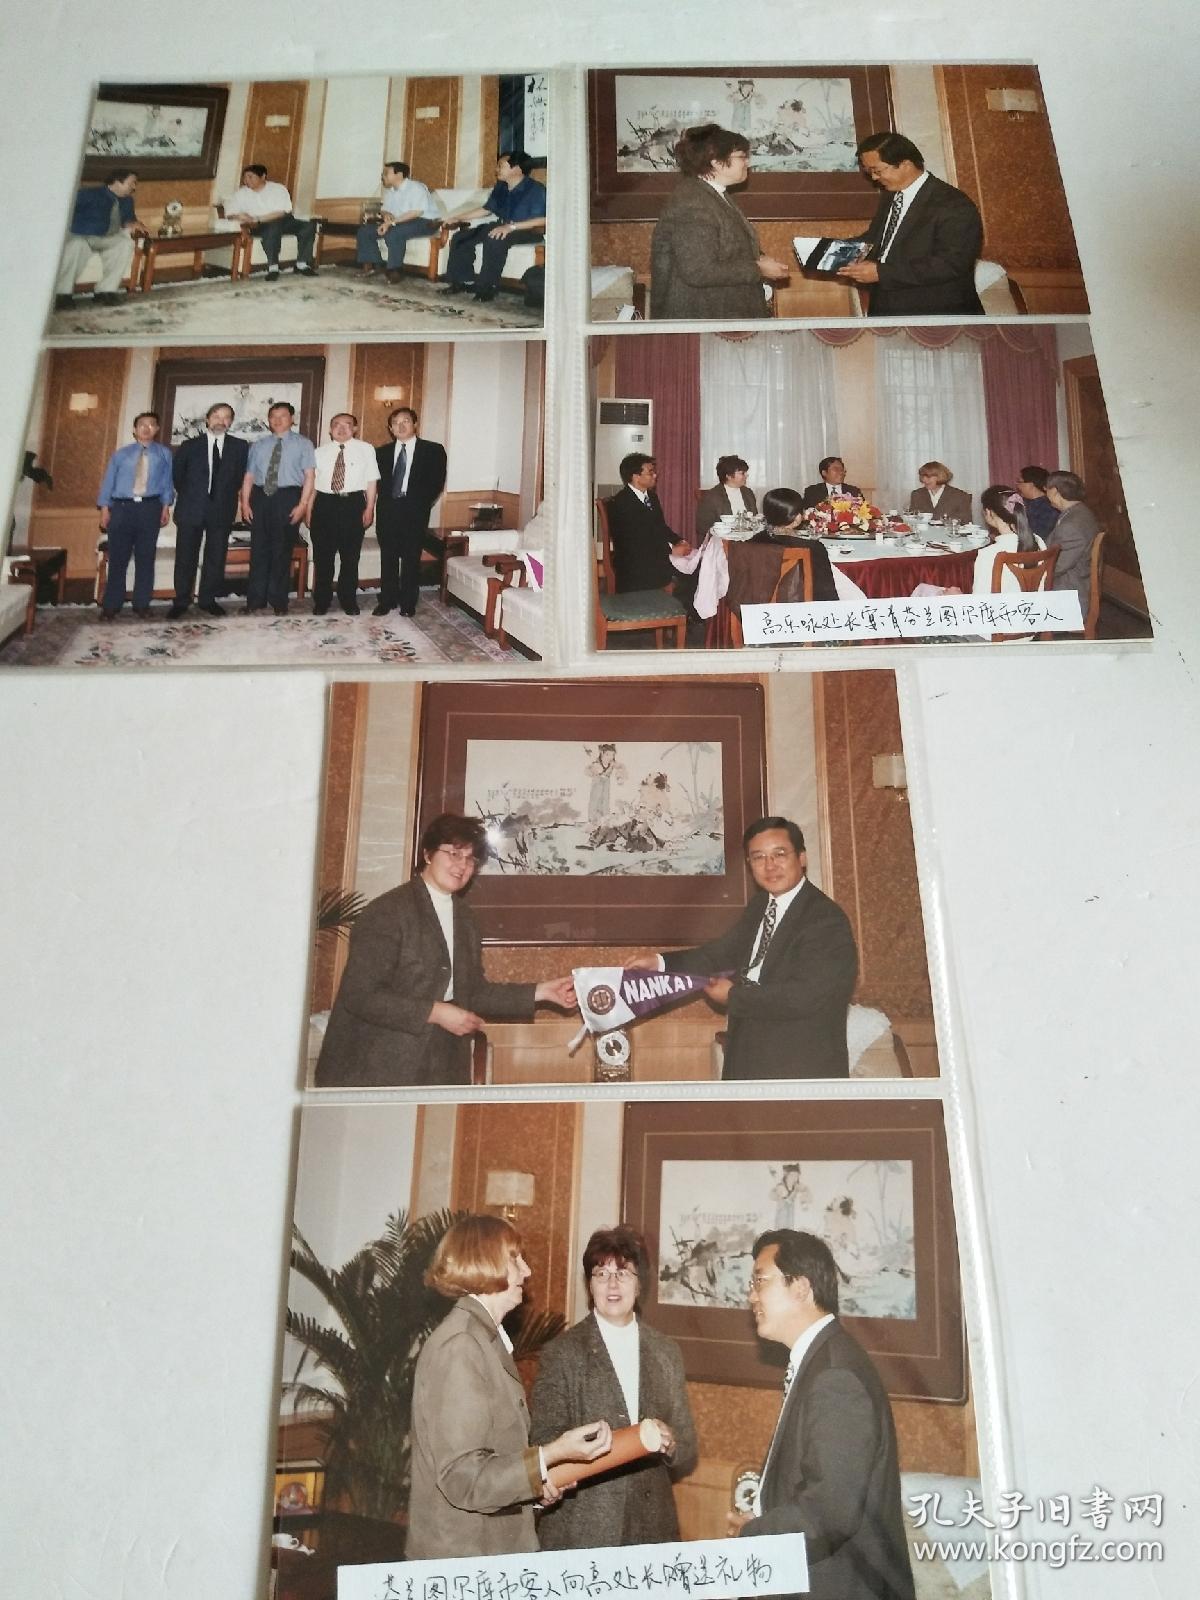 南开大学 高乐咏与国际友人的合影 照片12张 合售，详见图